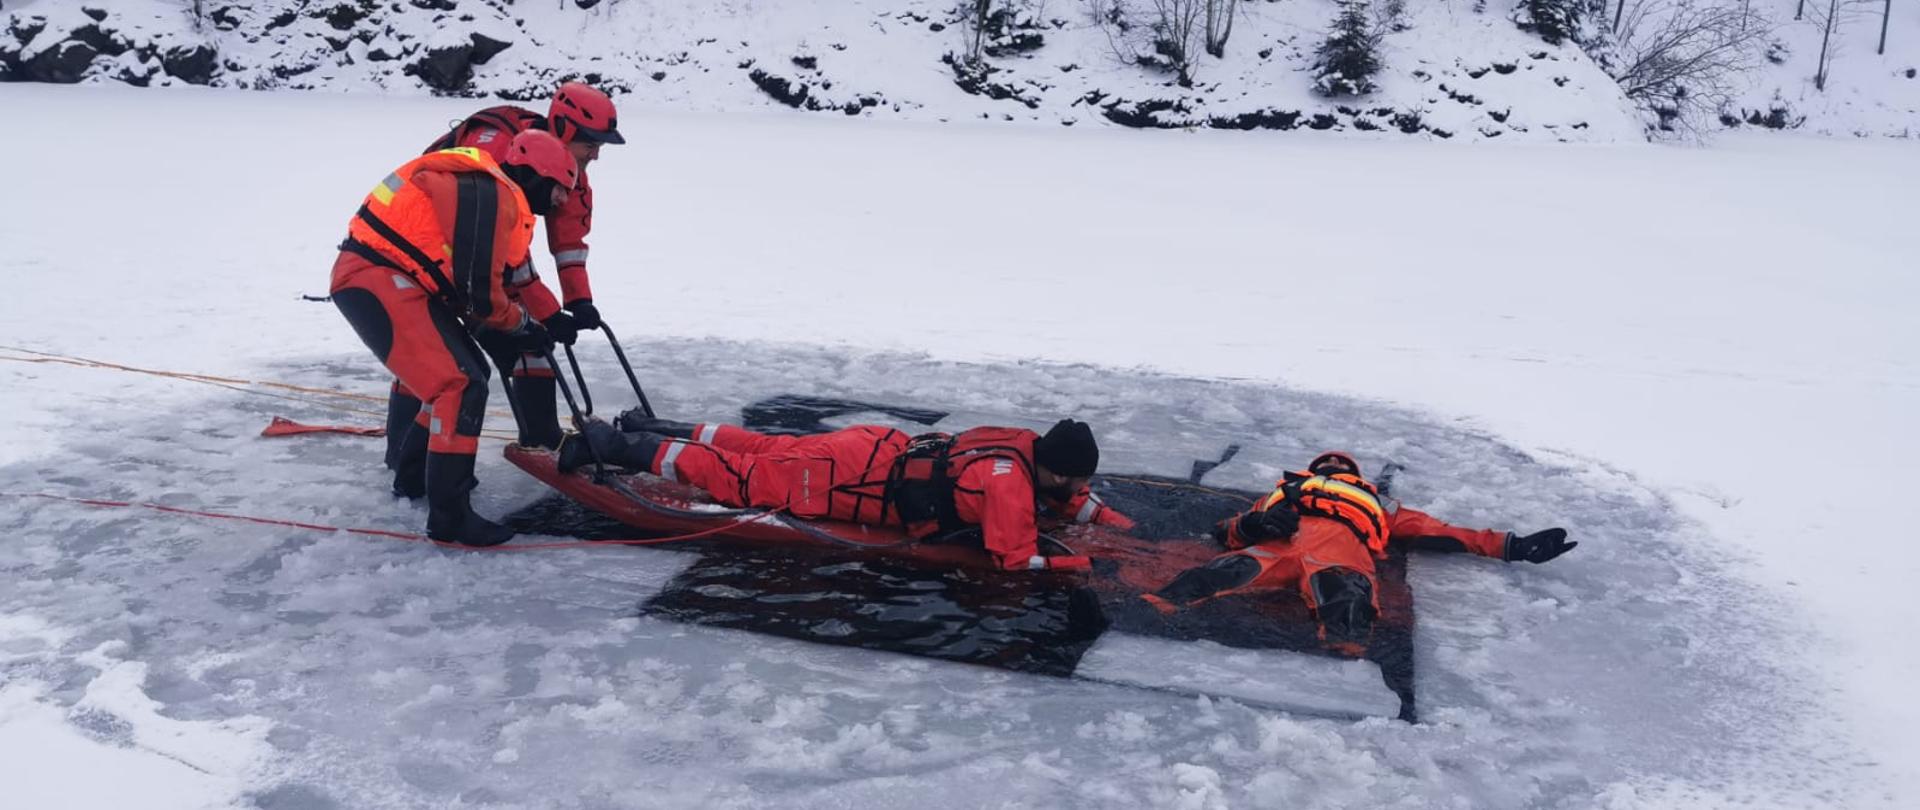 Na zdjęciu strażacy w pomarańczowych i czerwonych kombinezonach. Jeden strażak leży na plecach w wodzie, obok niego na saniach lodowych jest inny strażak, który go ratuje. Z lewej strony 2 strażaków stoi na lodzie i trzymają sanie lodowe.